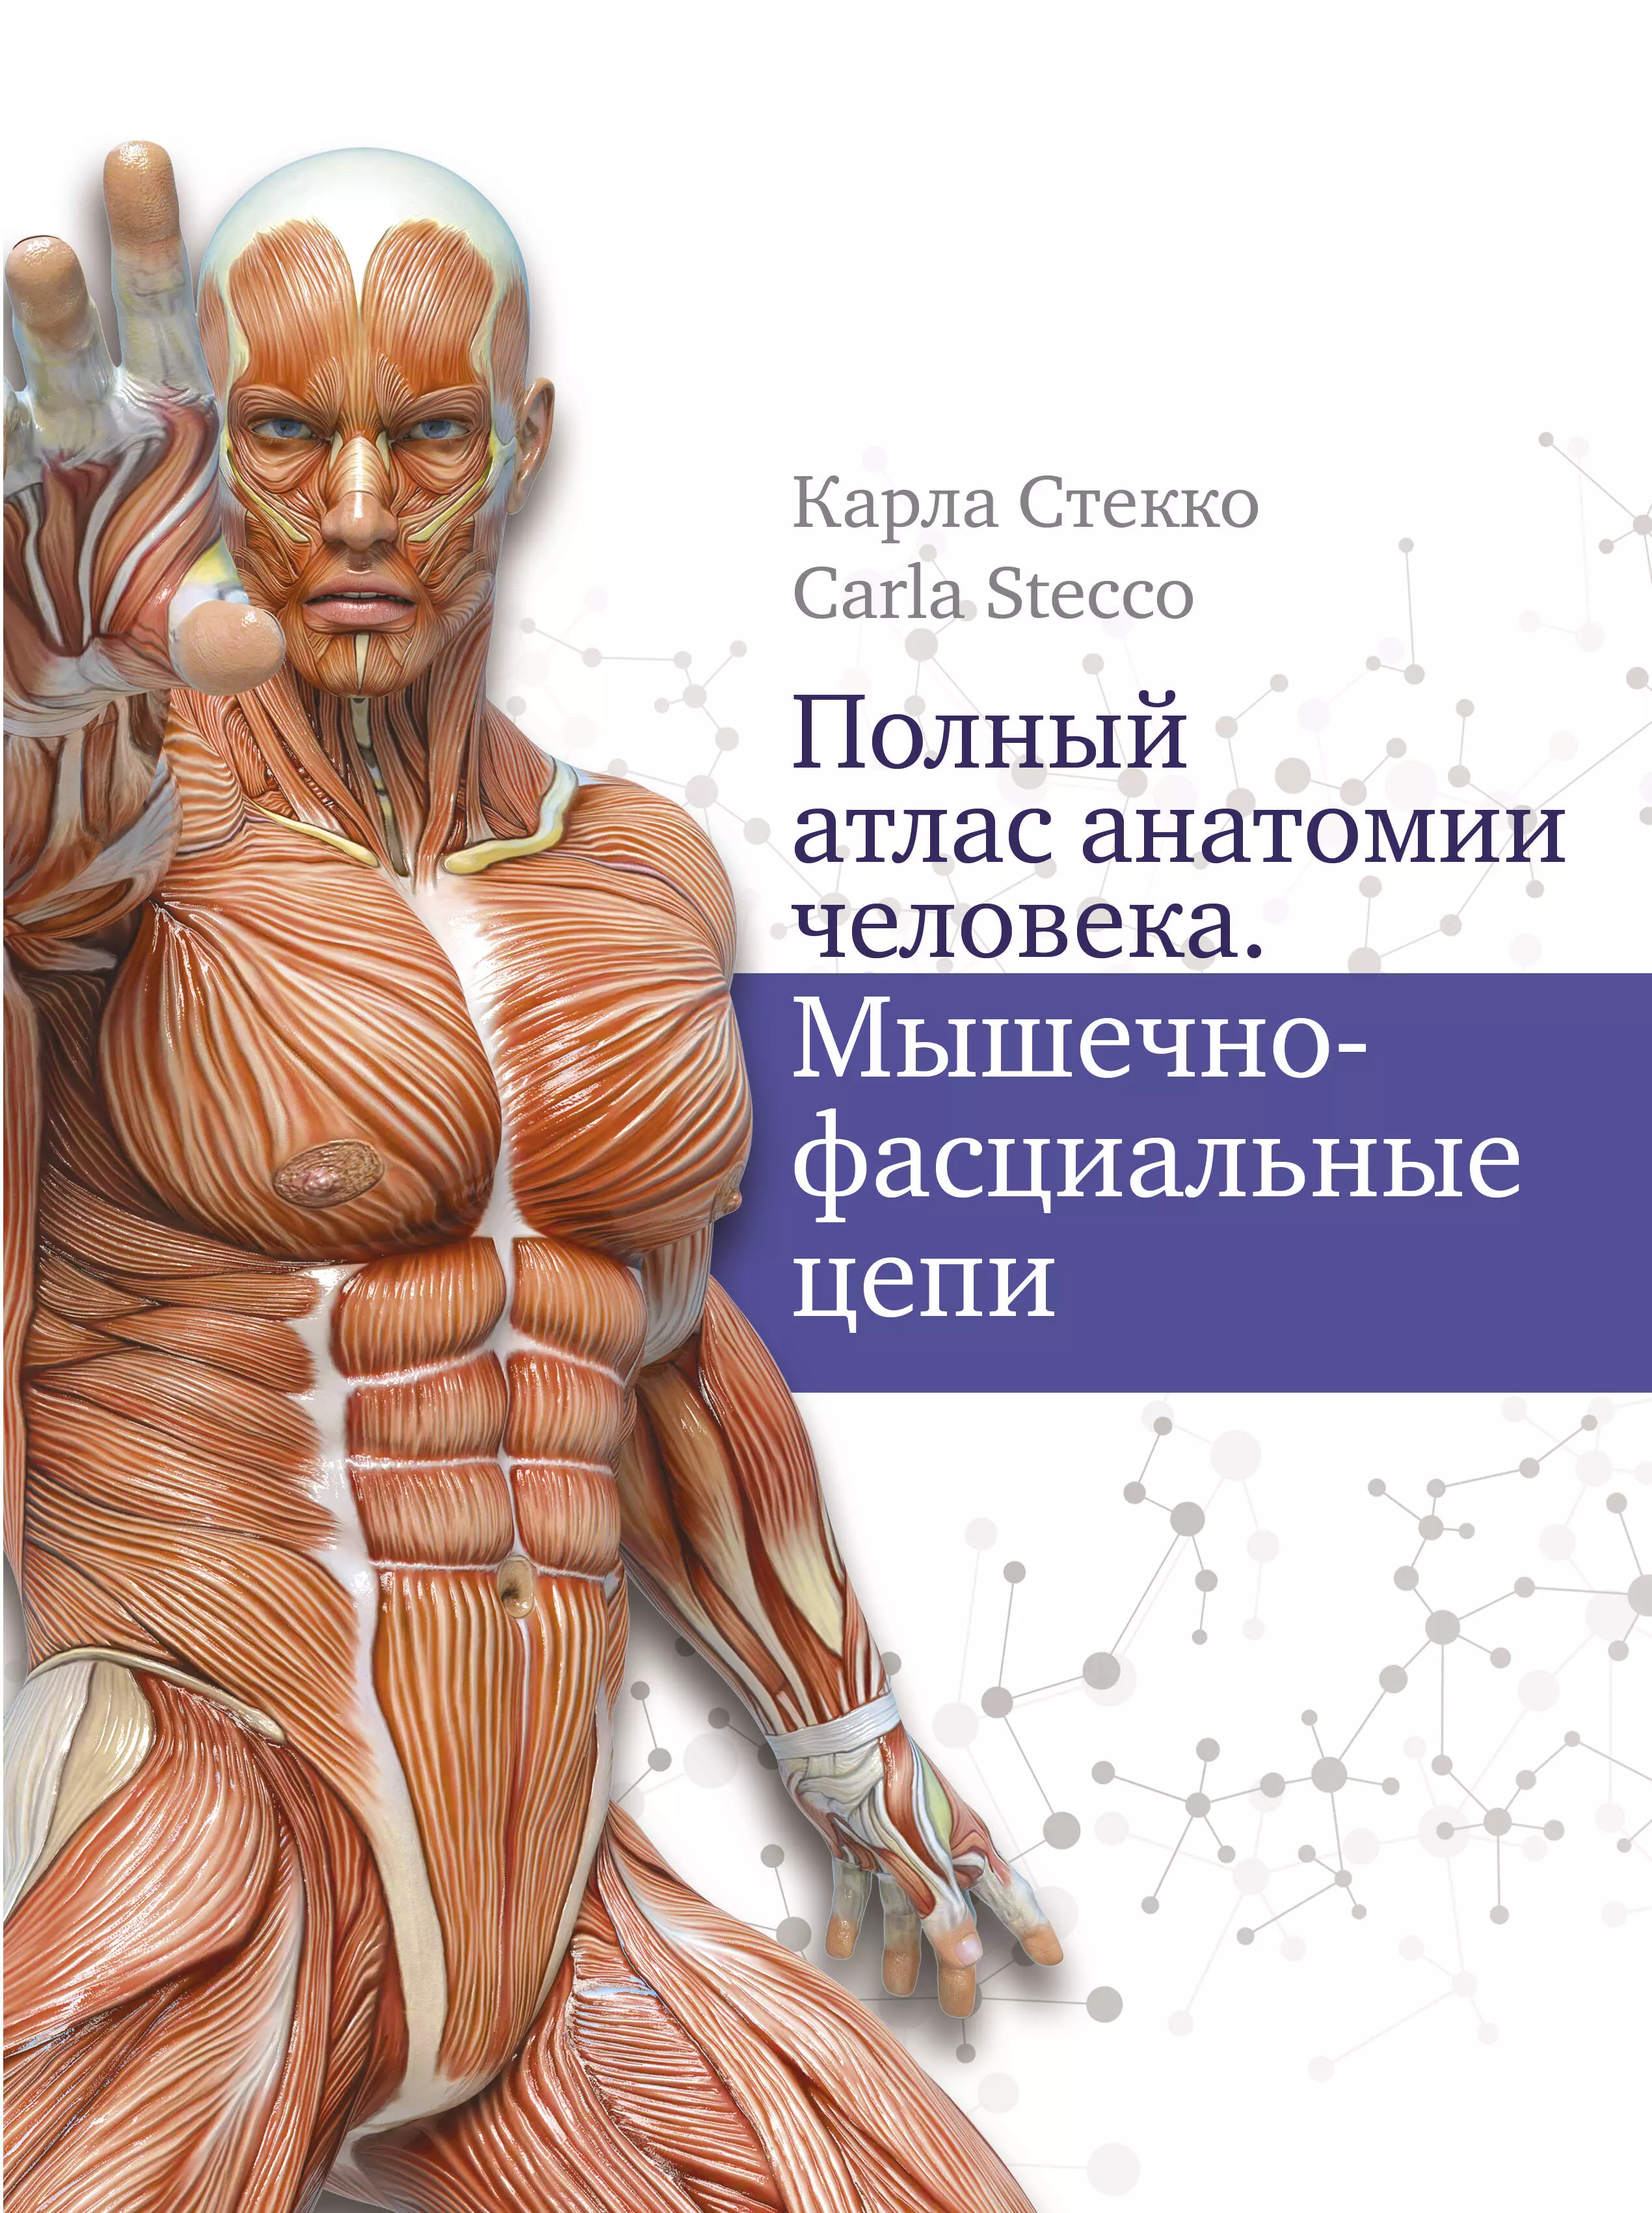 Стекко Карл - Полный атлас анатомии человека. Мышечно-фасциальные цепи